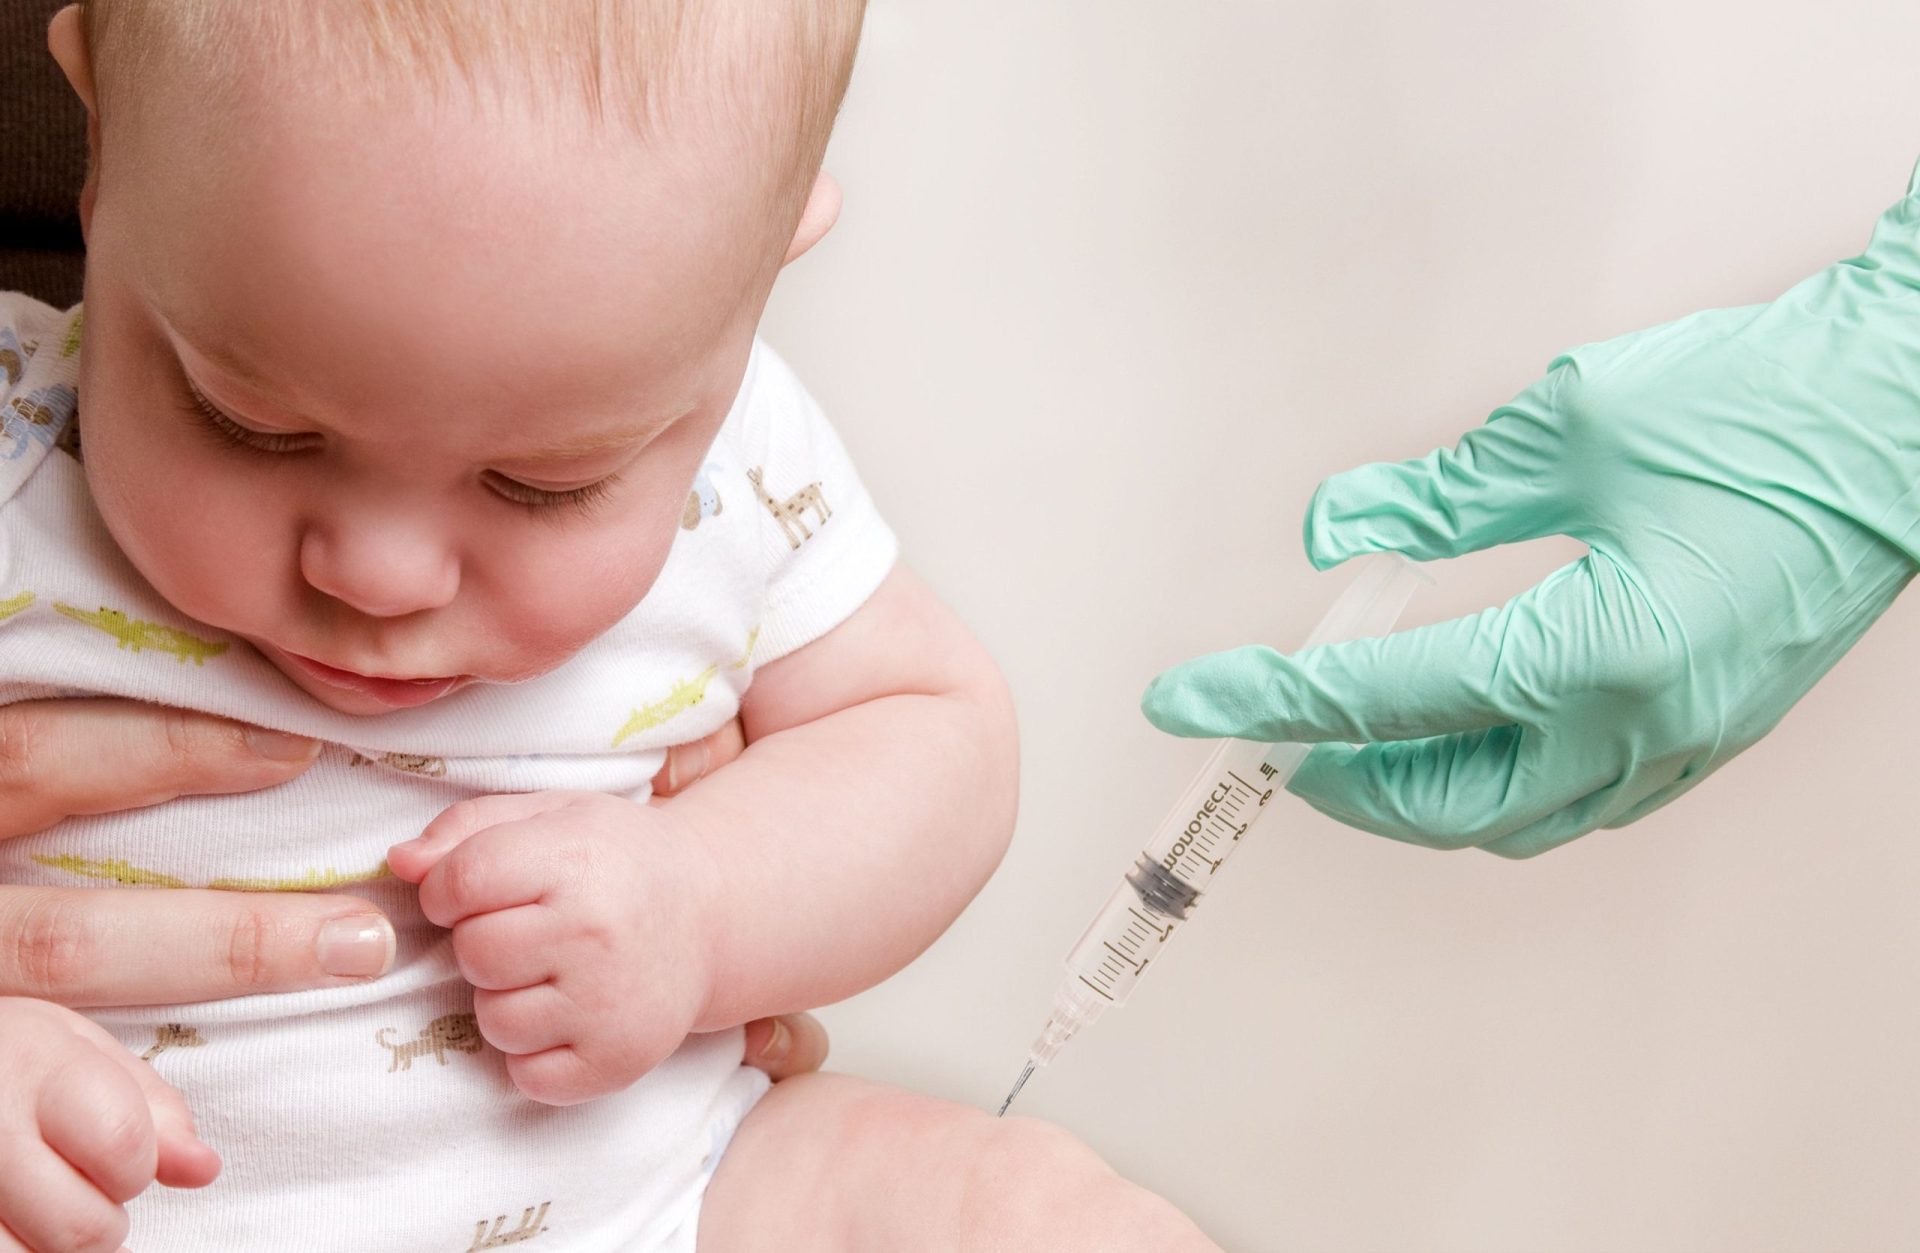 Austrália vai proibir crianças sem vacinas em dia de irem à creche